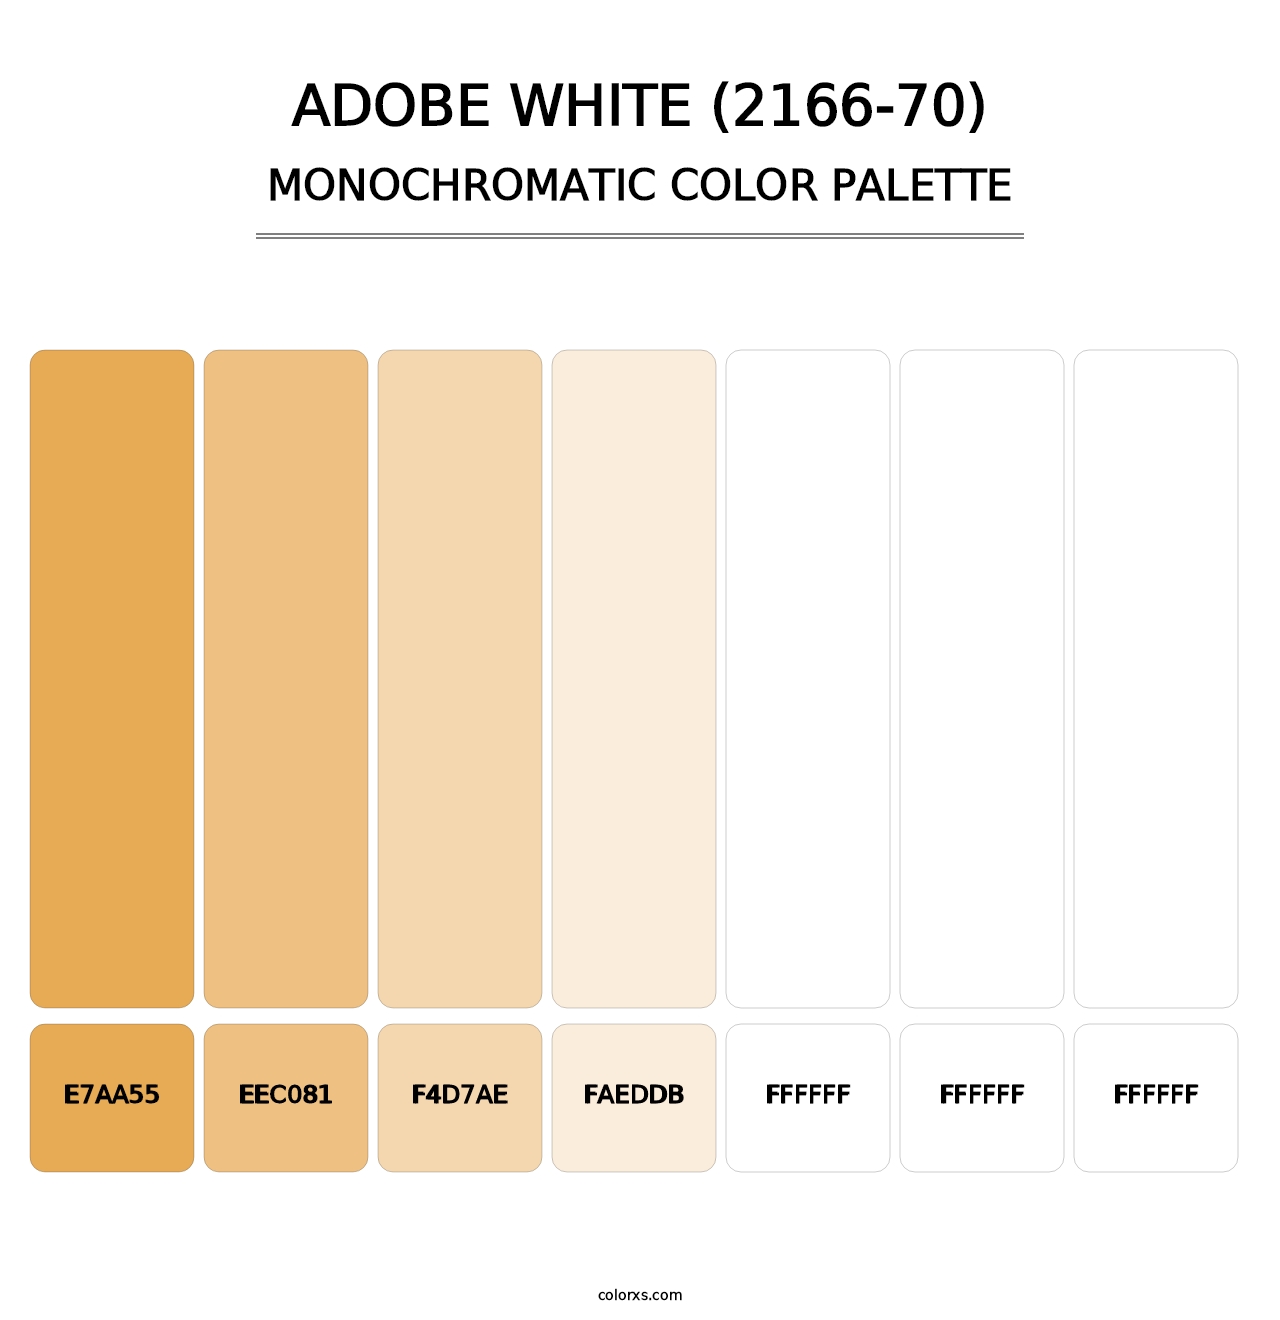 Adobe White (2166-70) - Monochromatic Color Palette